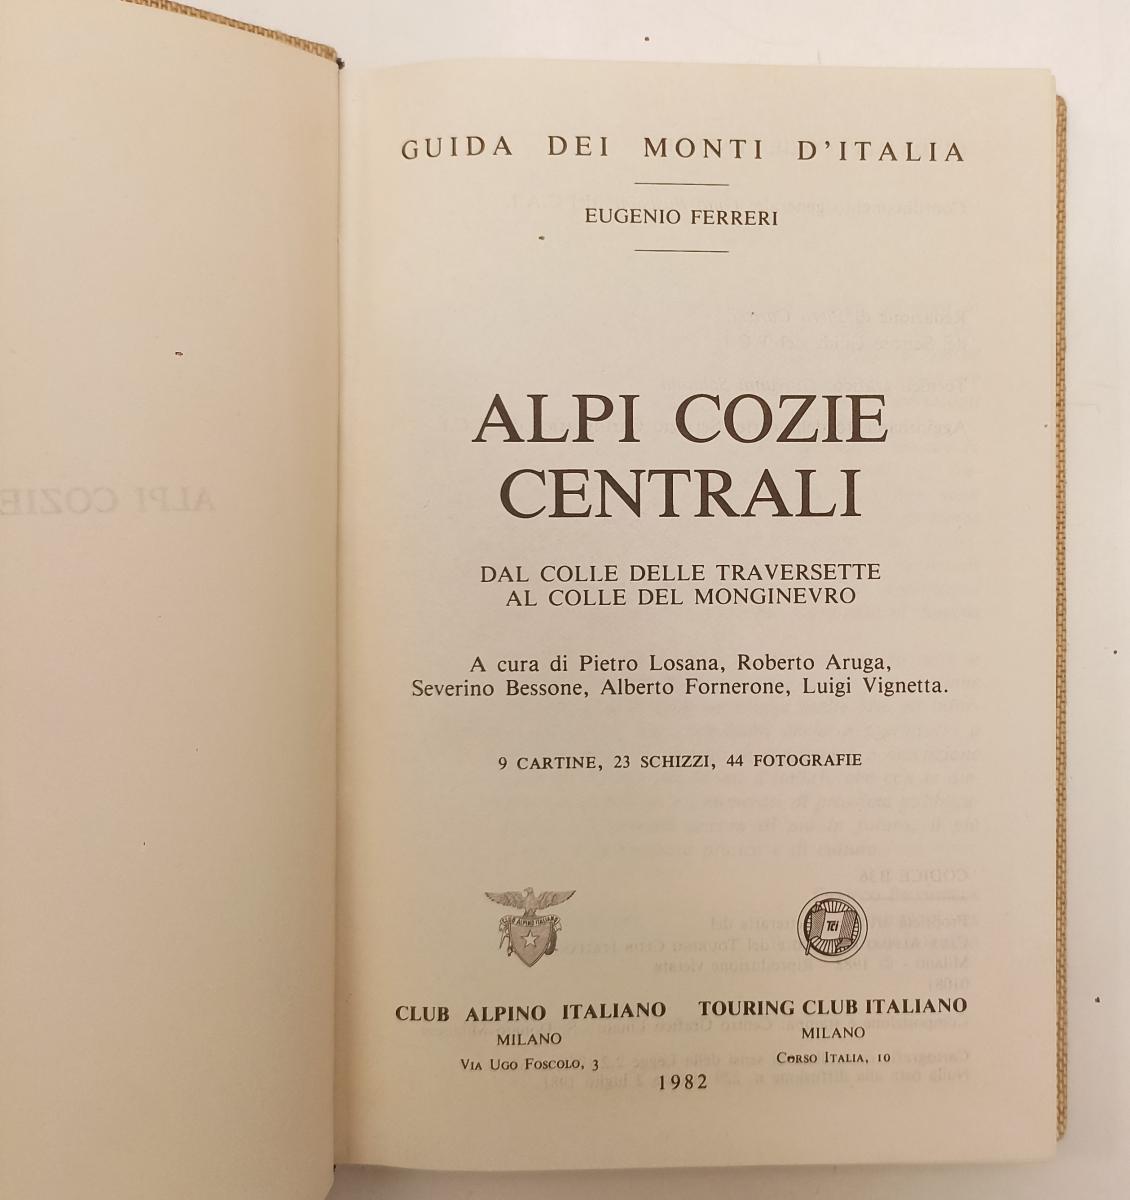 LV- GUIDA DEI MONTI D'ITALIA ALPI COZIE CENTRALI - FERRERI- TCI- 1982- C- XFS92